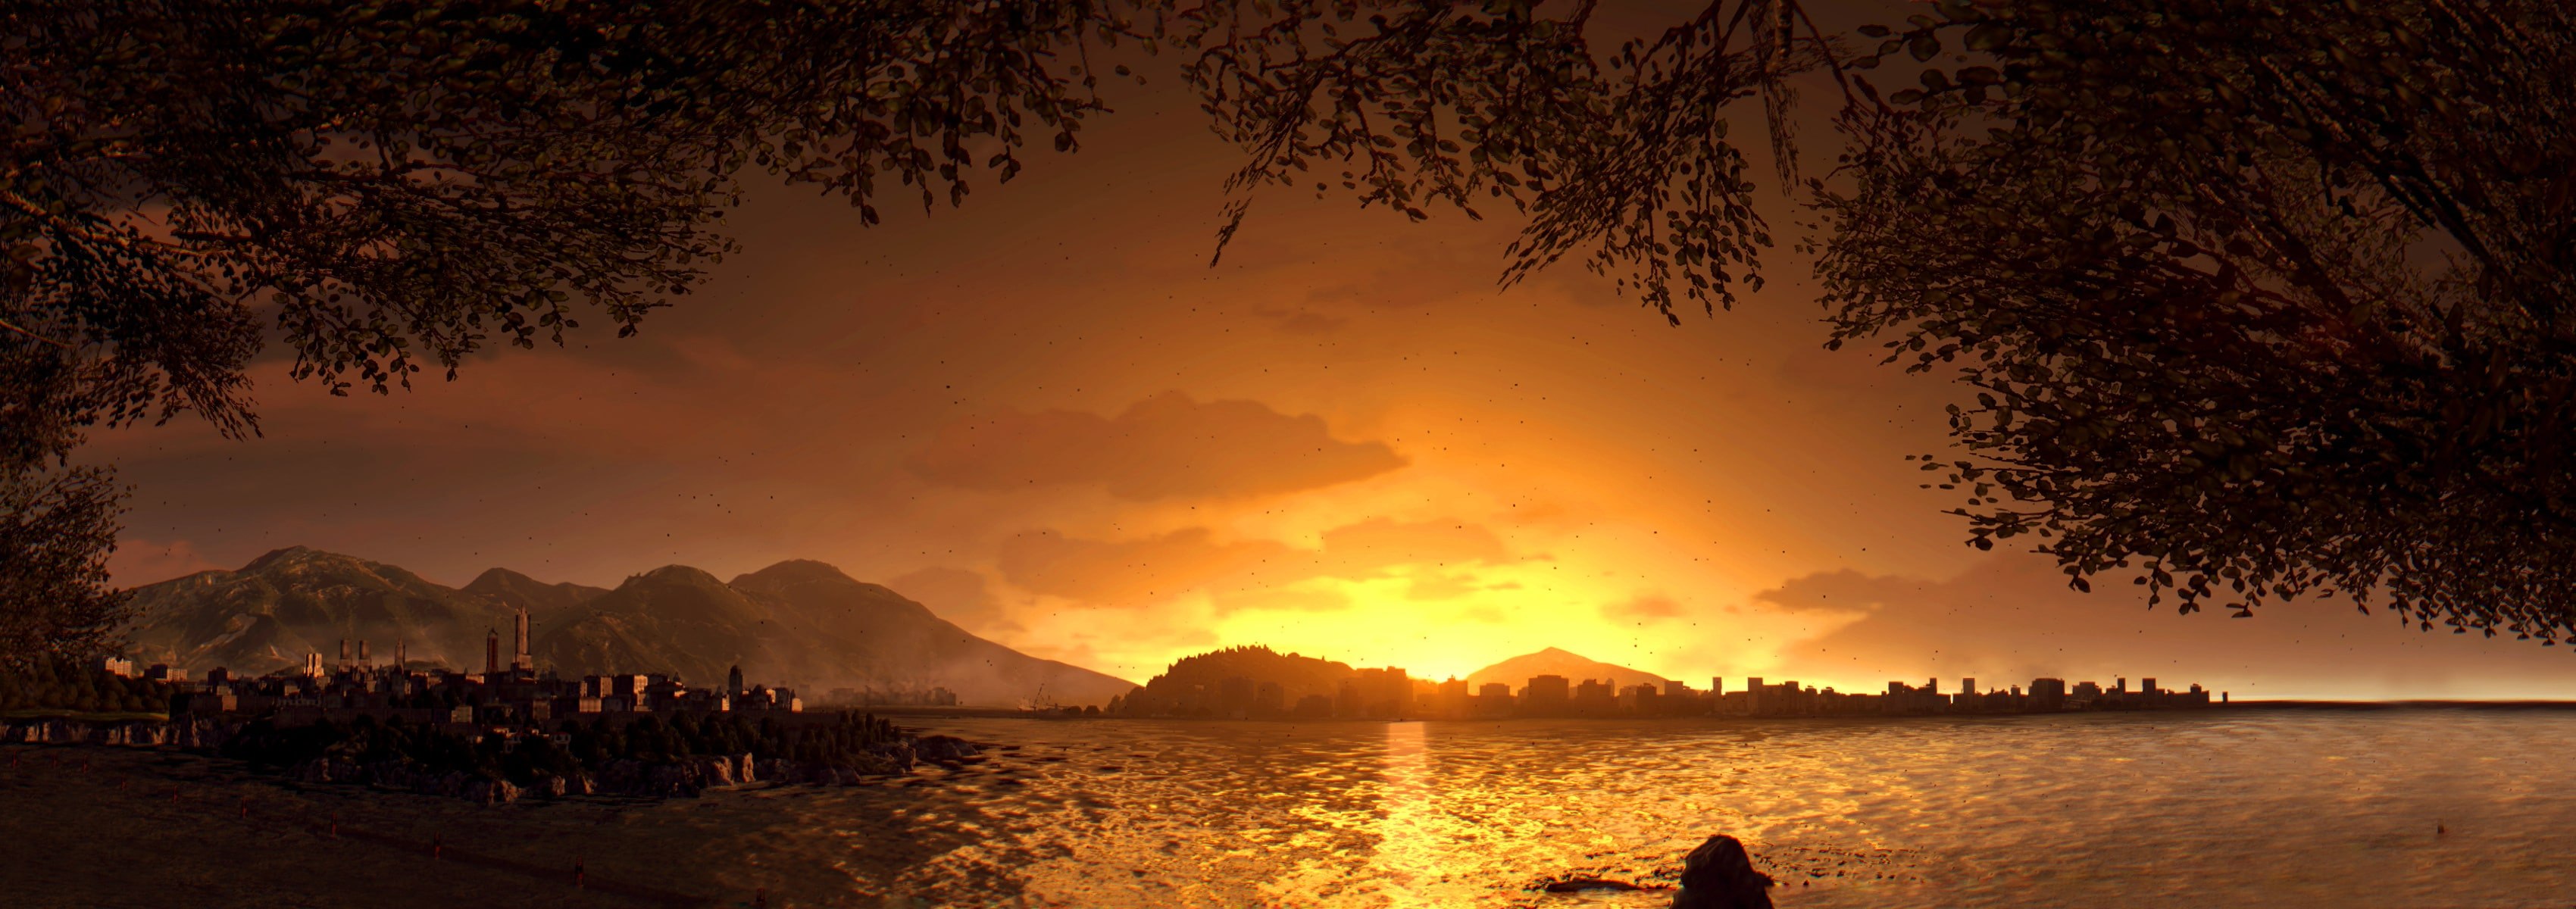 سی دی کی اریجینال استیم بازی Dying Light: The Following - Enhanced Edition